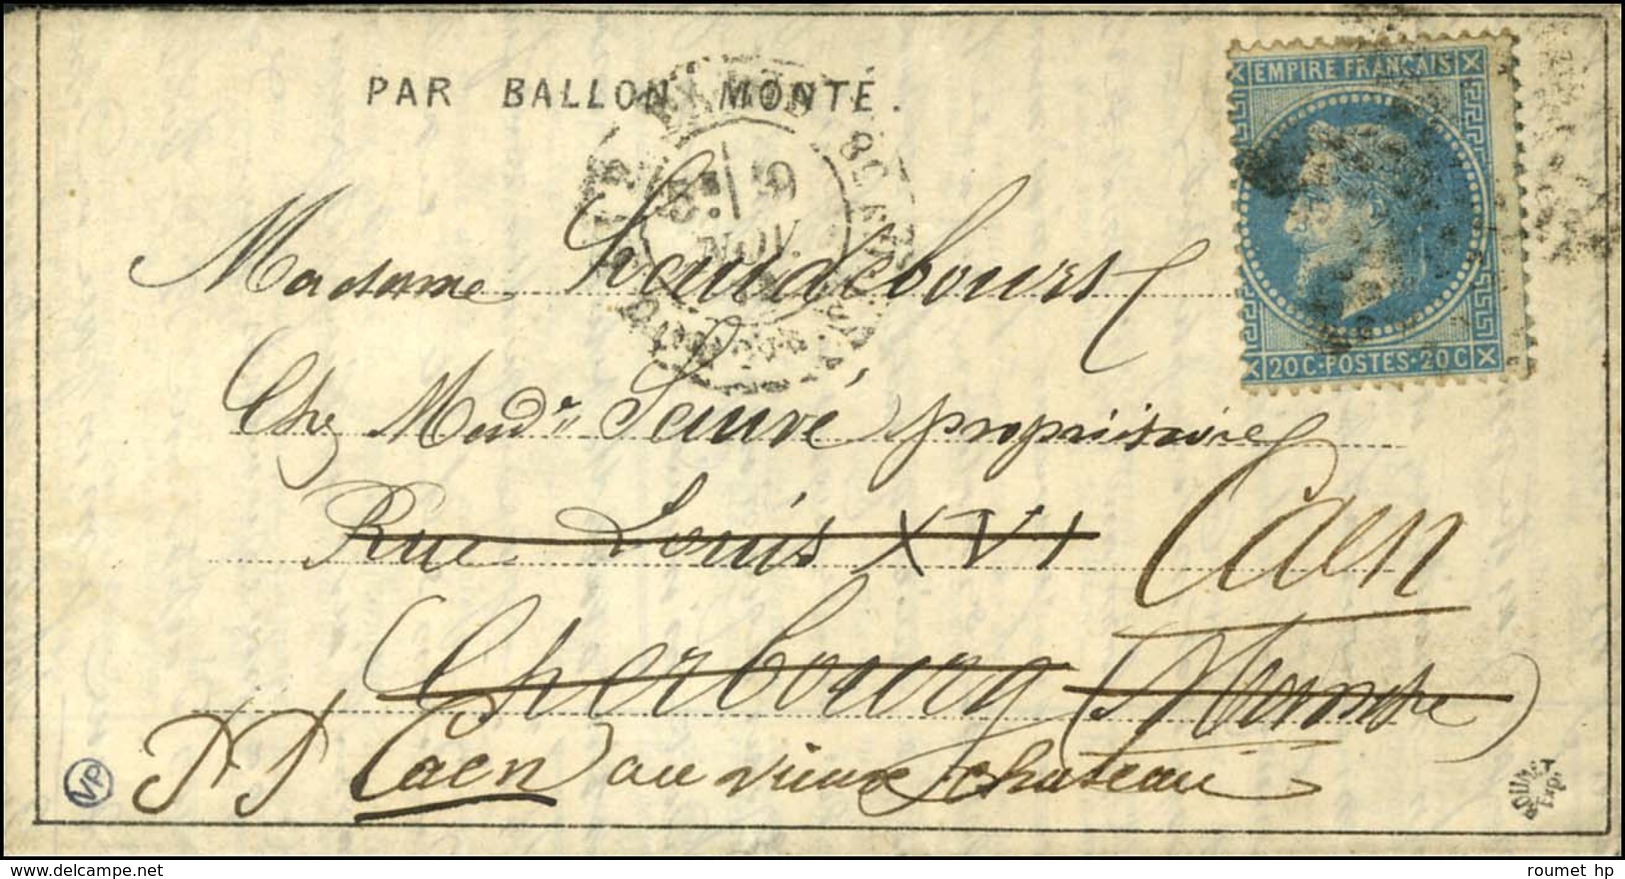 Etoile 20 / N° 29 Càd PARIS / R. St DOMque St Gn 58 9 NOV. 70 Sur Dépêche-Ballon N° 4 Pour Cherbourg Réexpédiée à Caen,  - War 1870